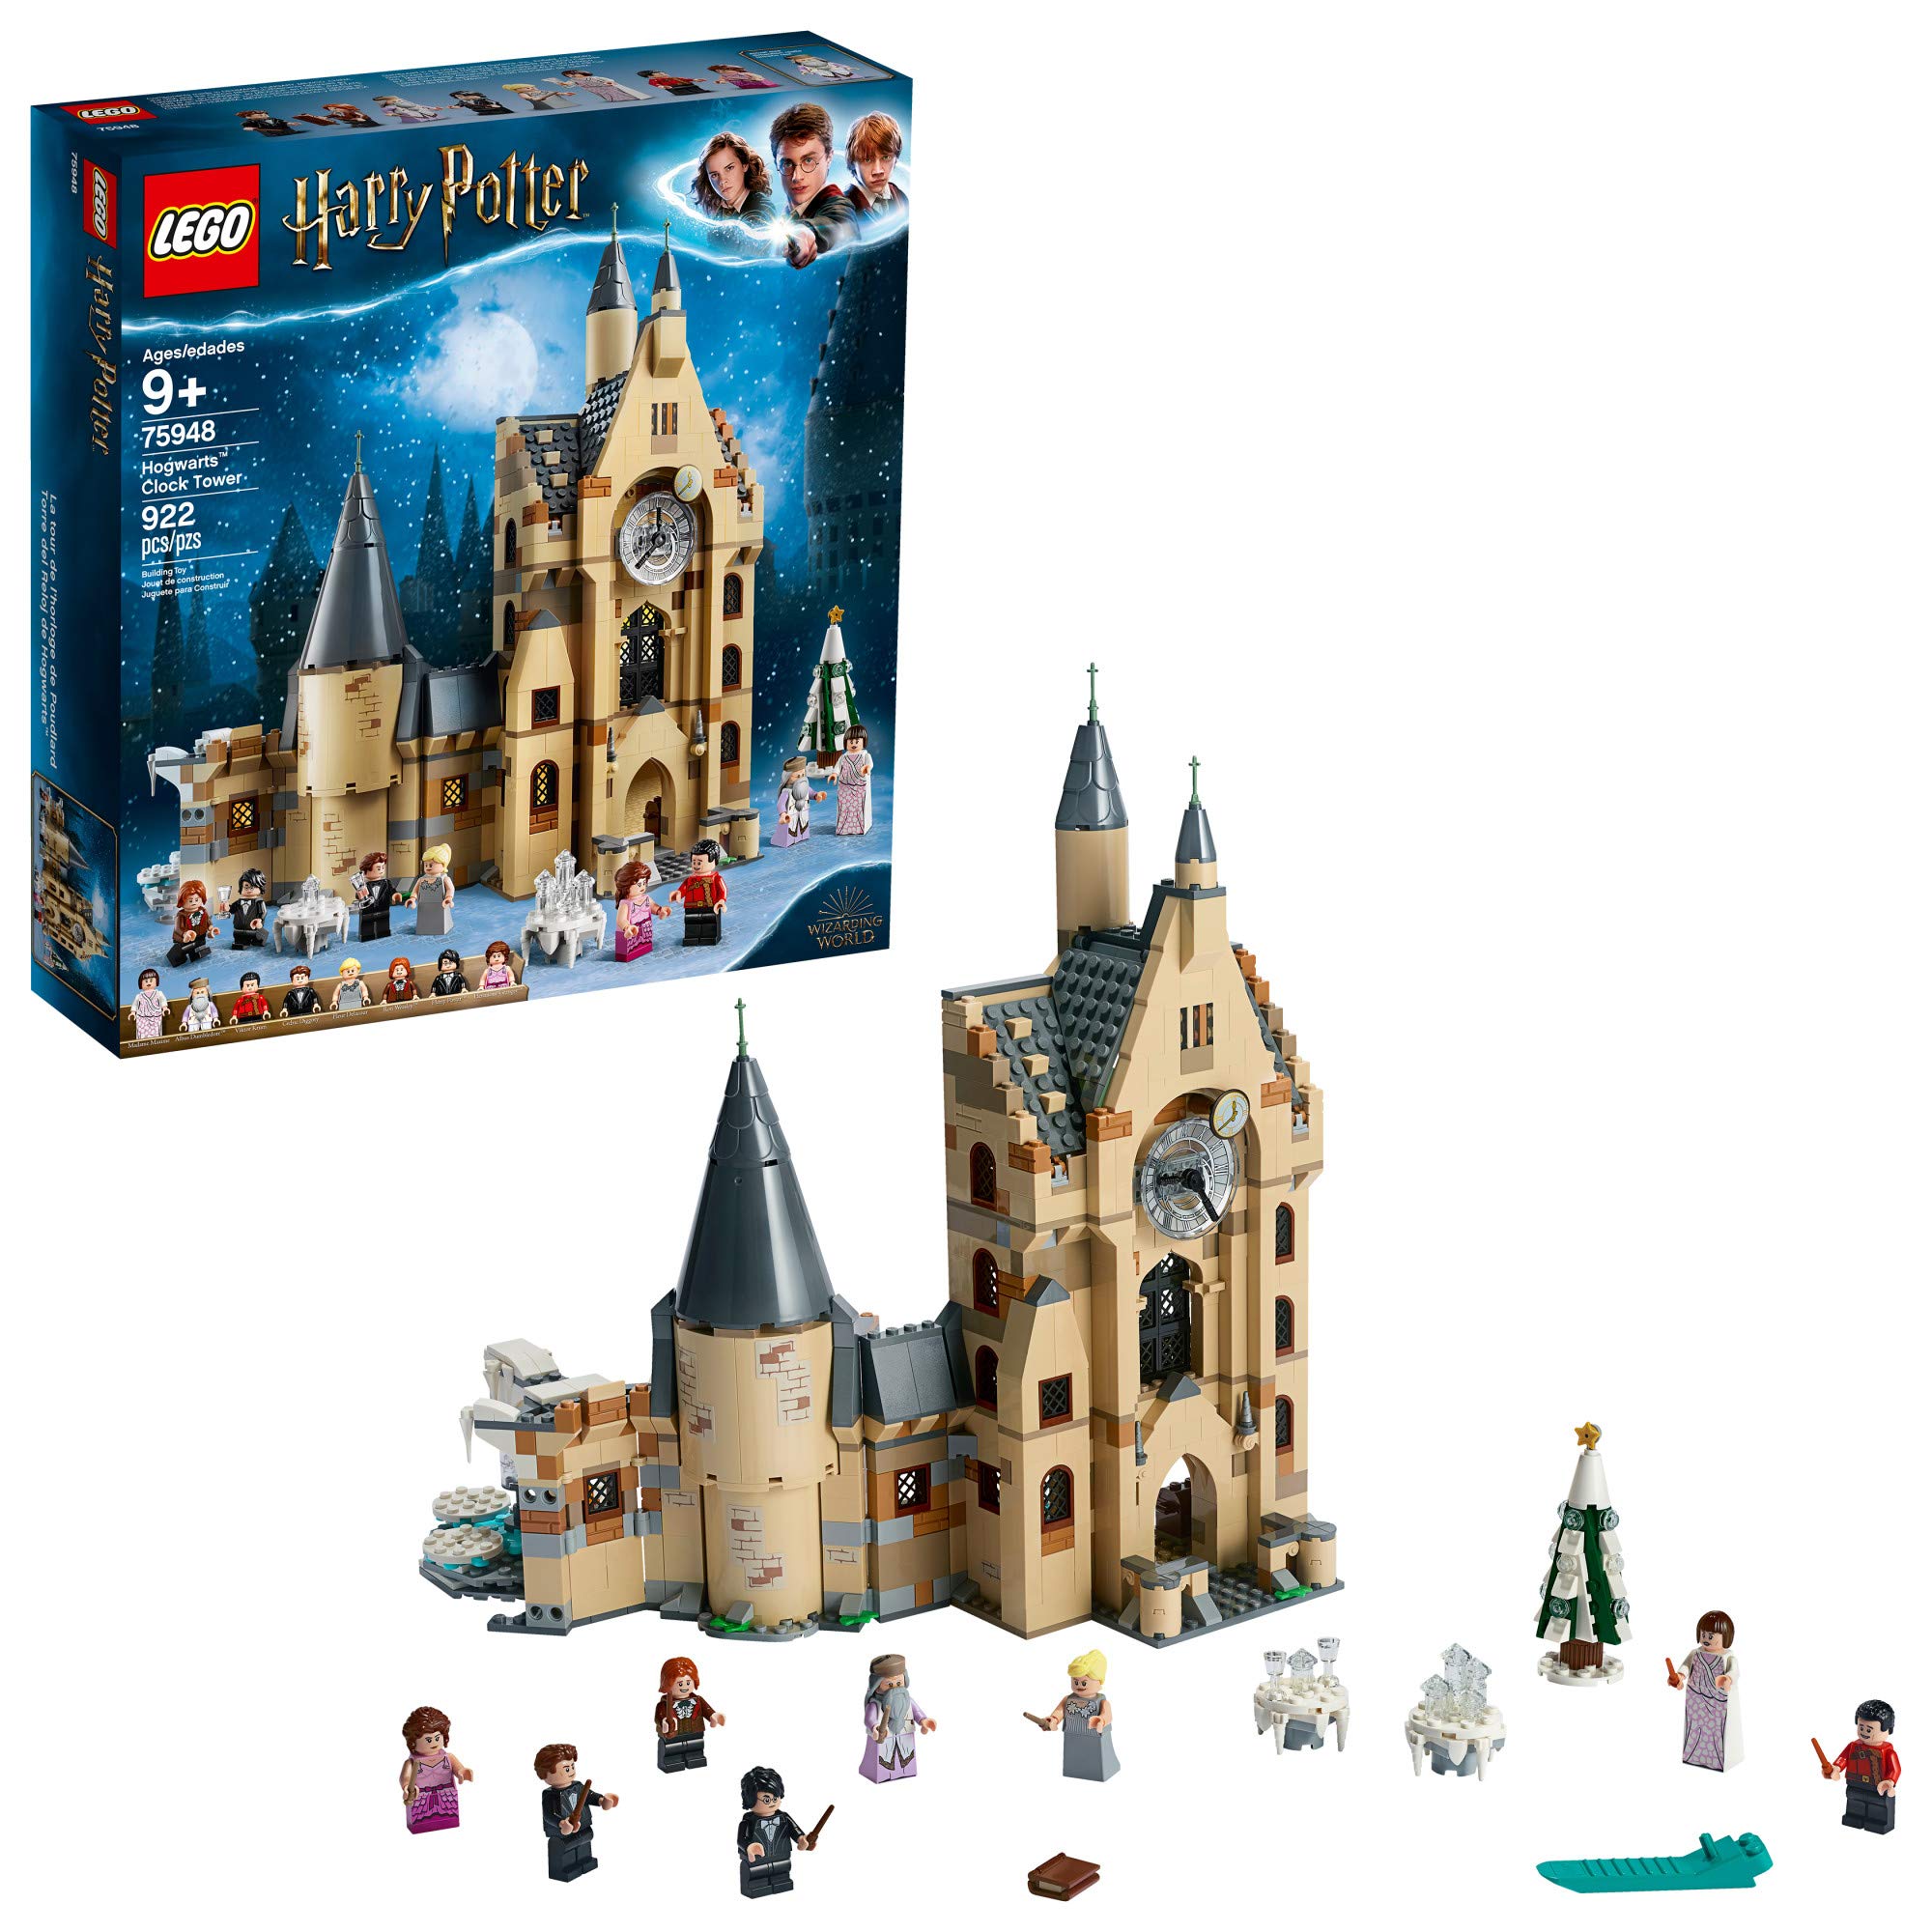  LEGO ハリー・ポッター ホグワーツ時計塔 75948 ハリー・ポッターのミニフィギュア付き組み立てて遊ぶタワーセット、人気のハリー・ポッターギフト...